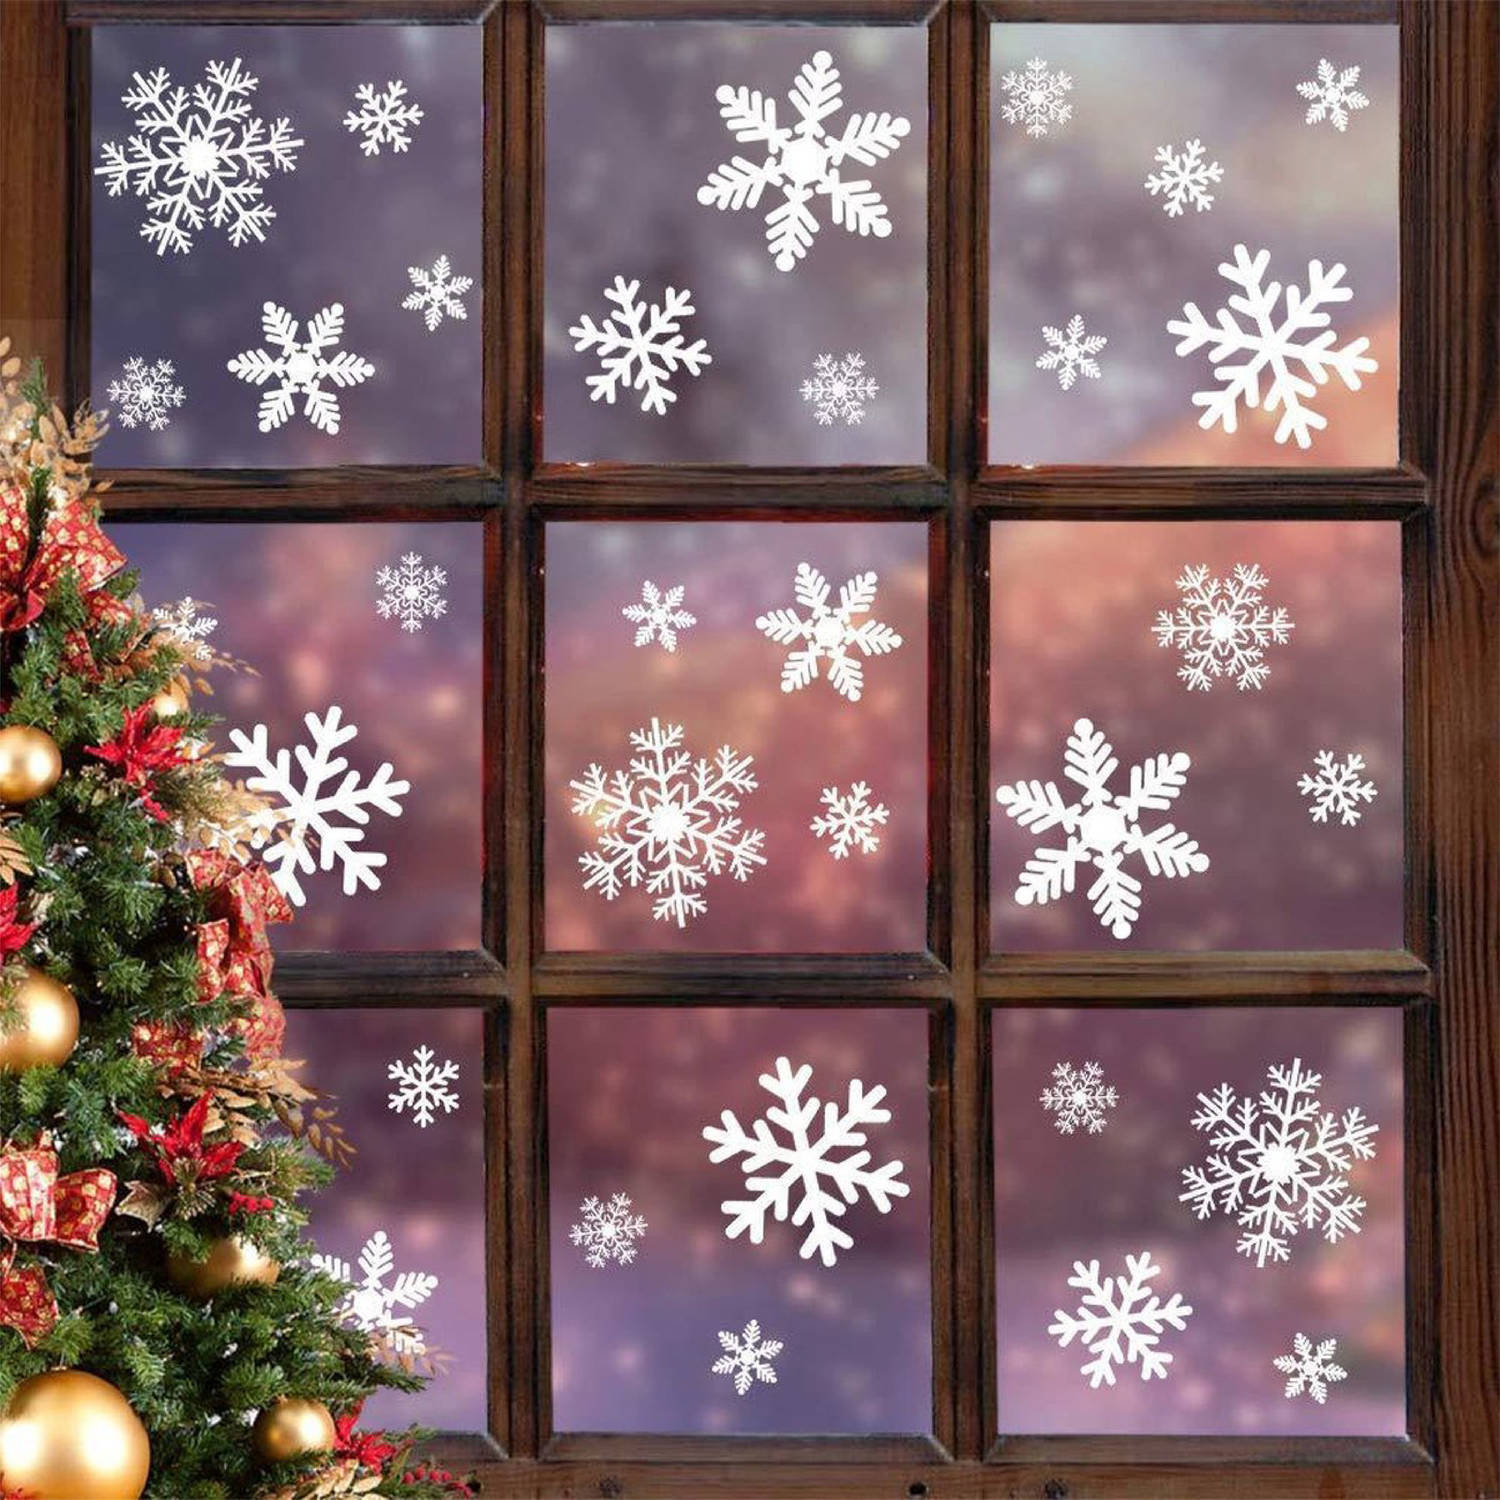 Fissaly® 294 Stickers Sneeuwvlokken Winter & Kerst Raam Decoratie – Kerstversiering voor Binnen - Sterren & Ijspegels - Raamstickers